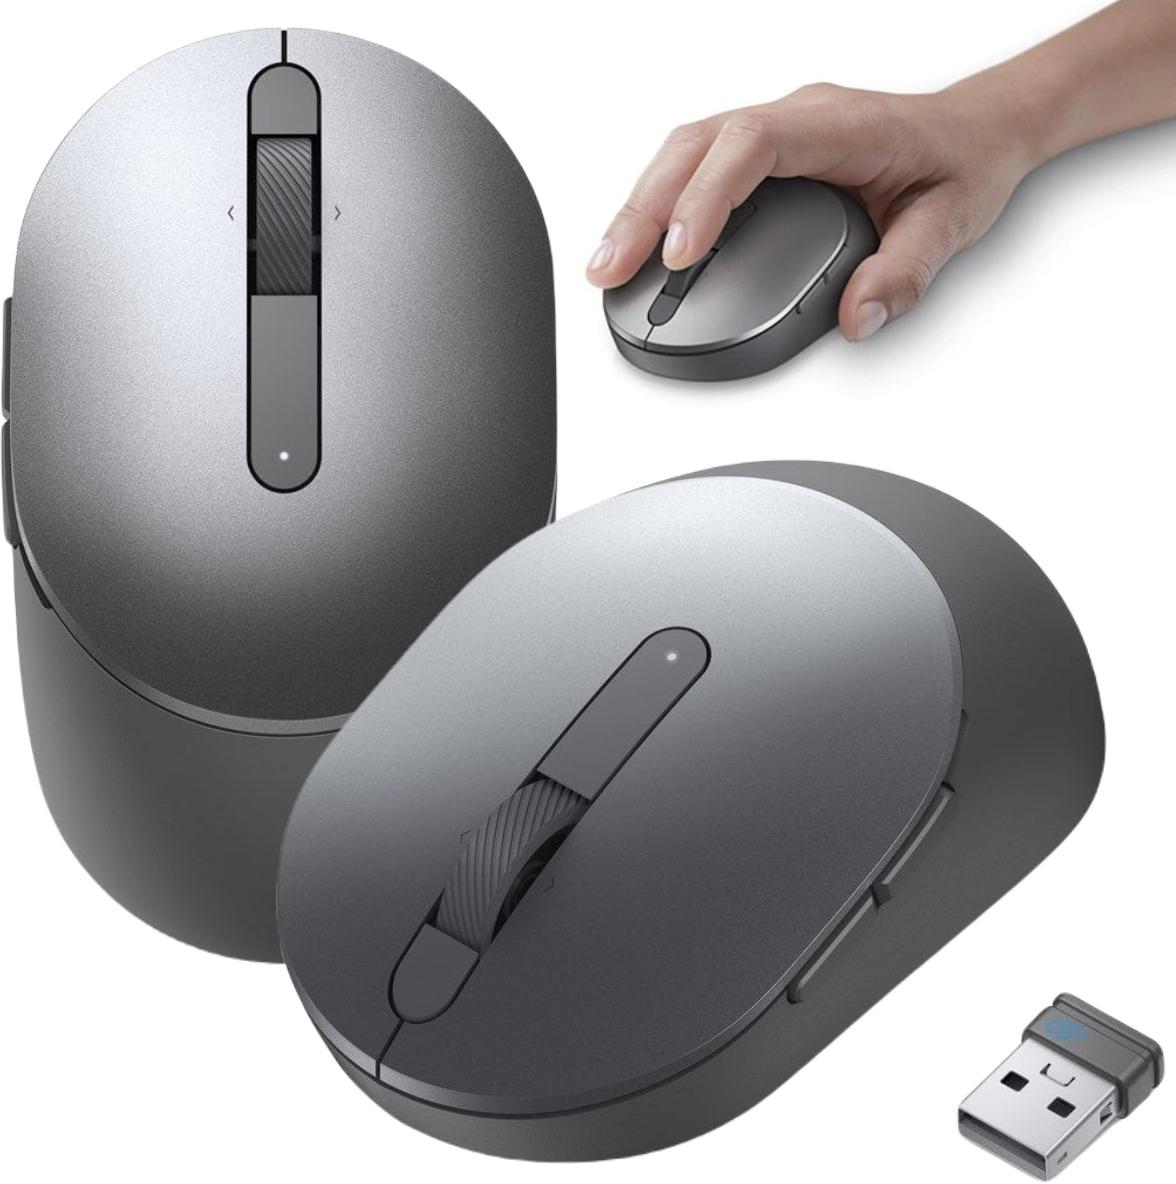 Bezprzewodowa optyczna mysz oburęczna Dell MS5120W Pro Wireless Mouse - najważniejsze cechy: